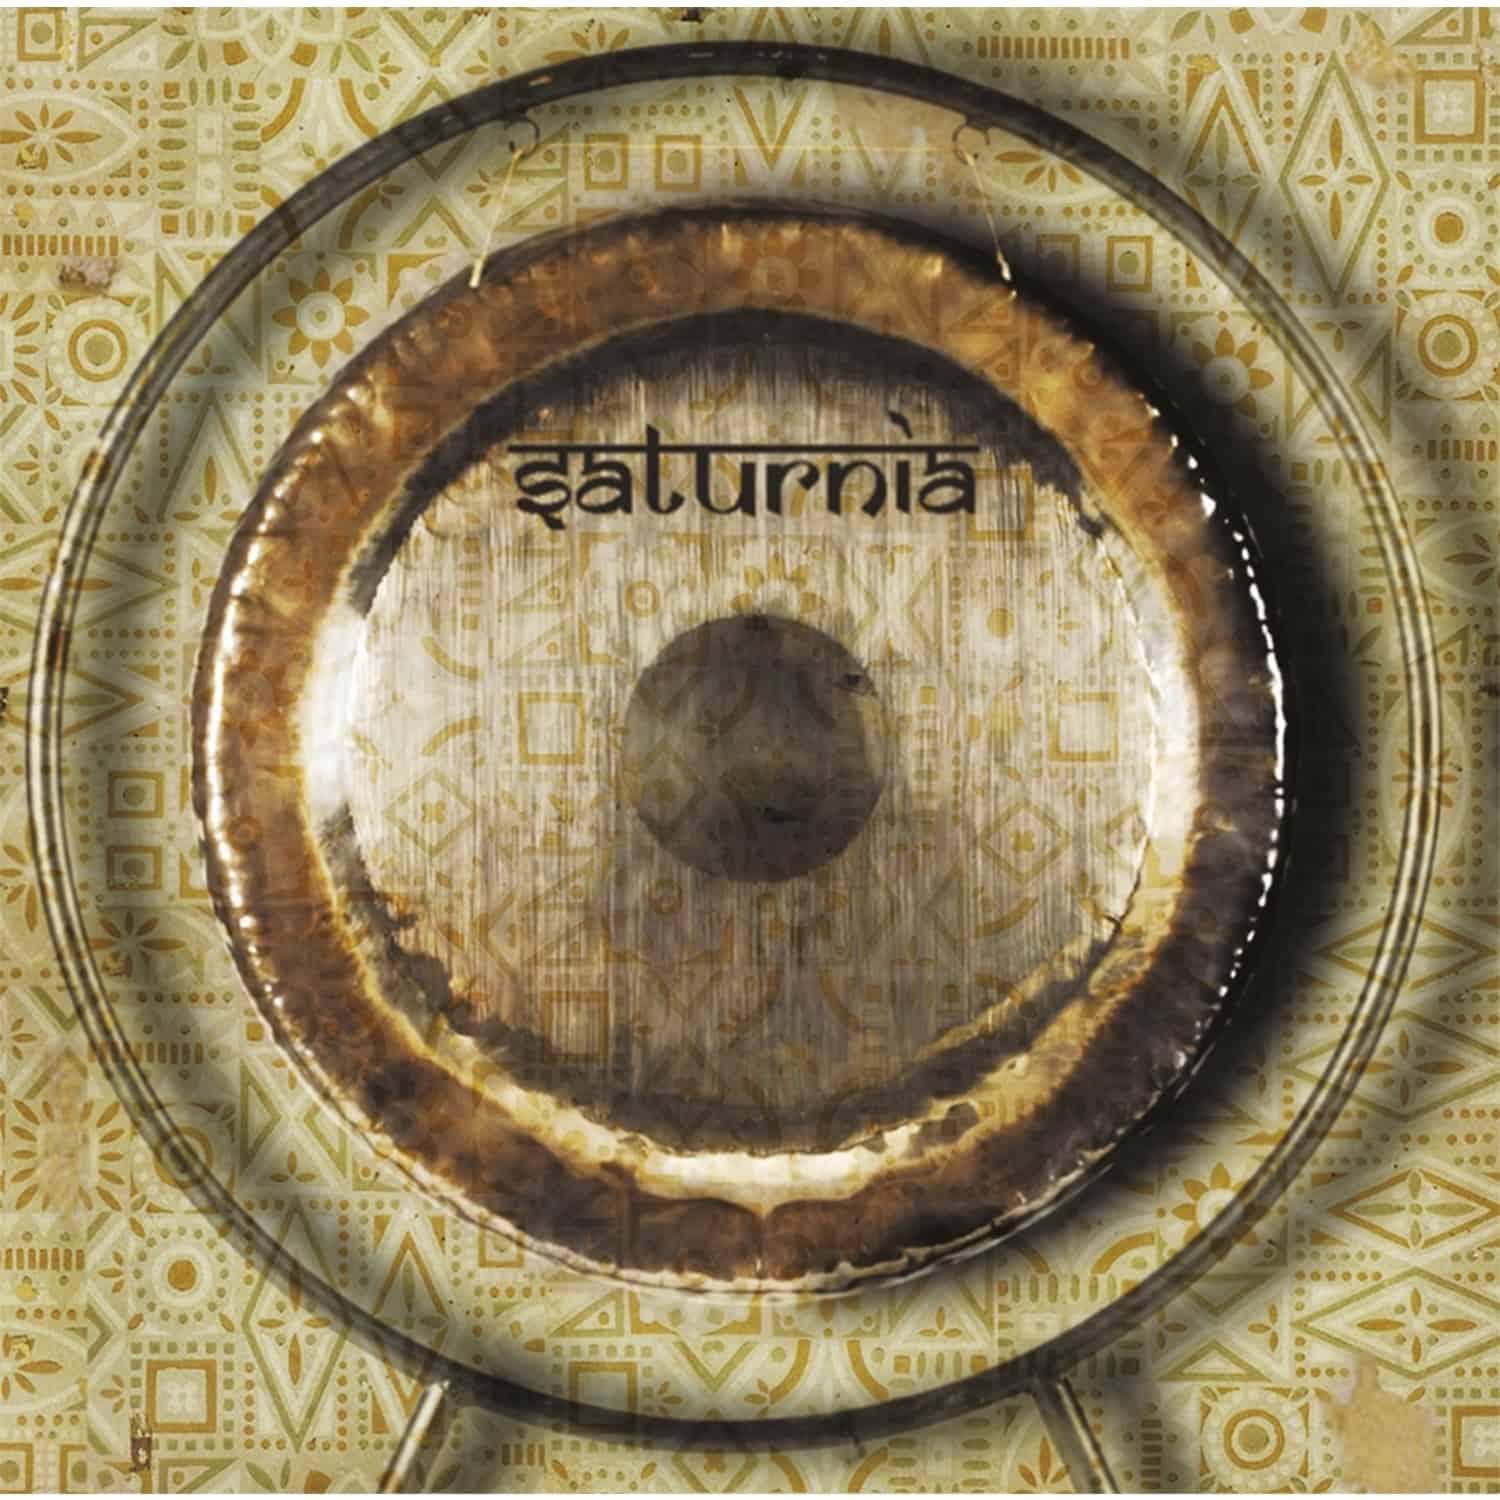 Saturnia - THE GLITTER ODD 